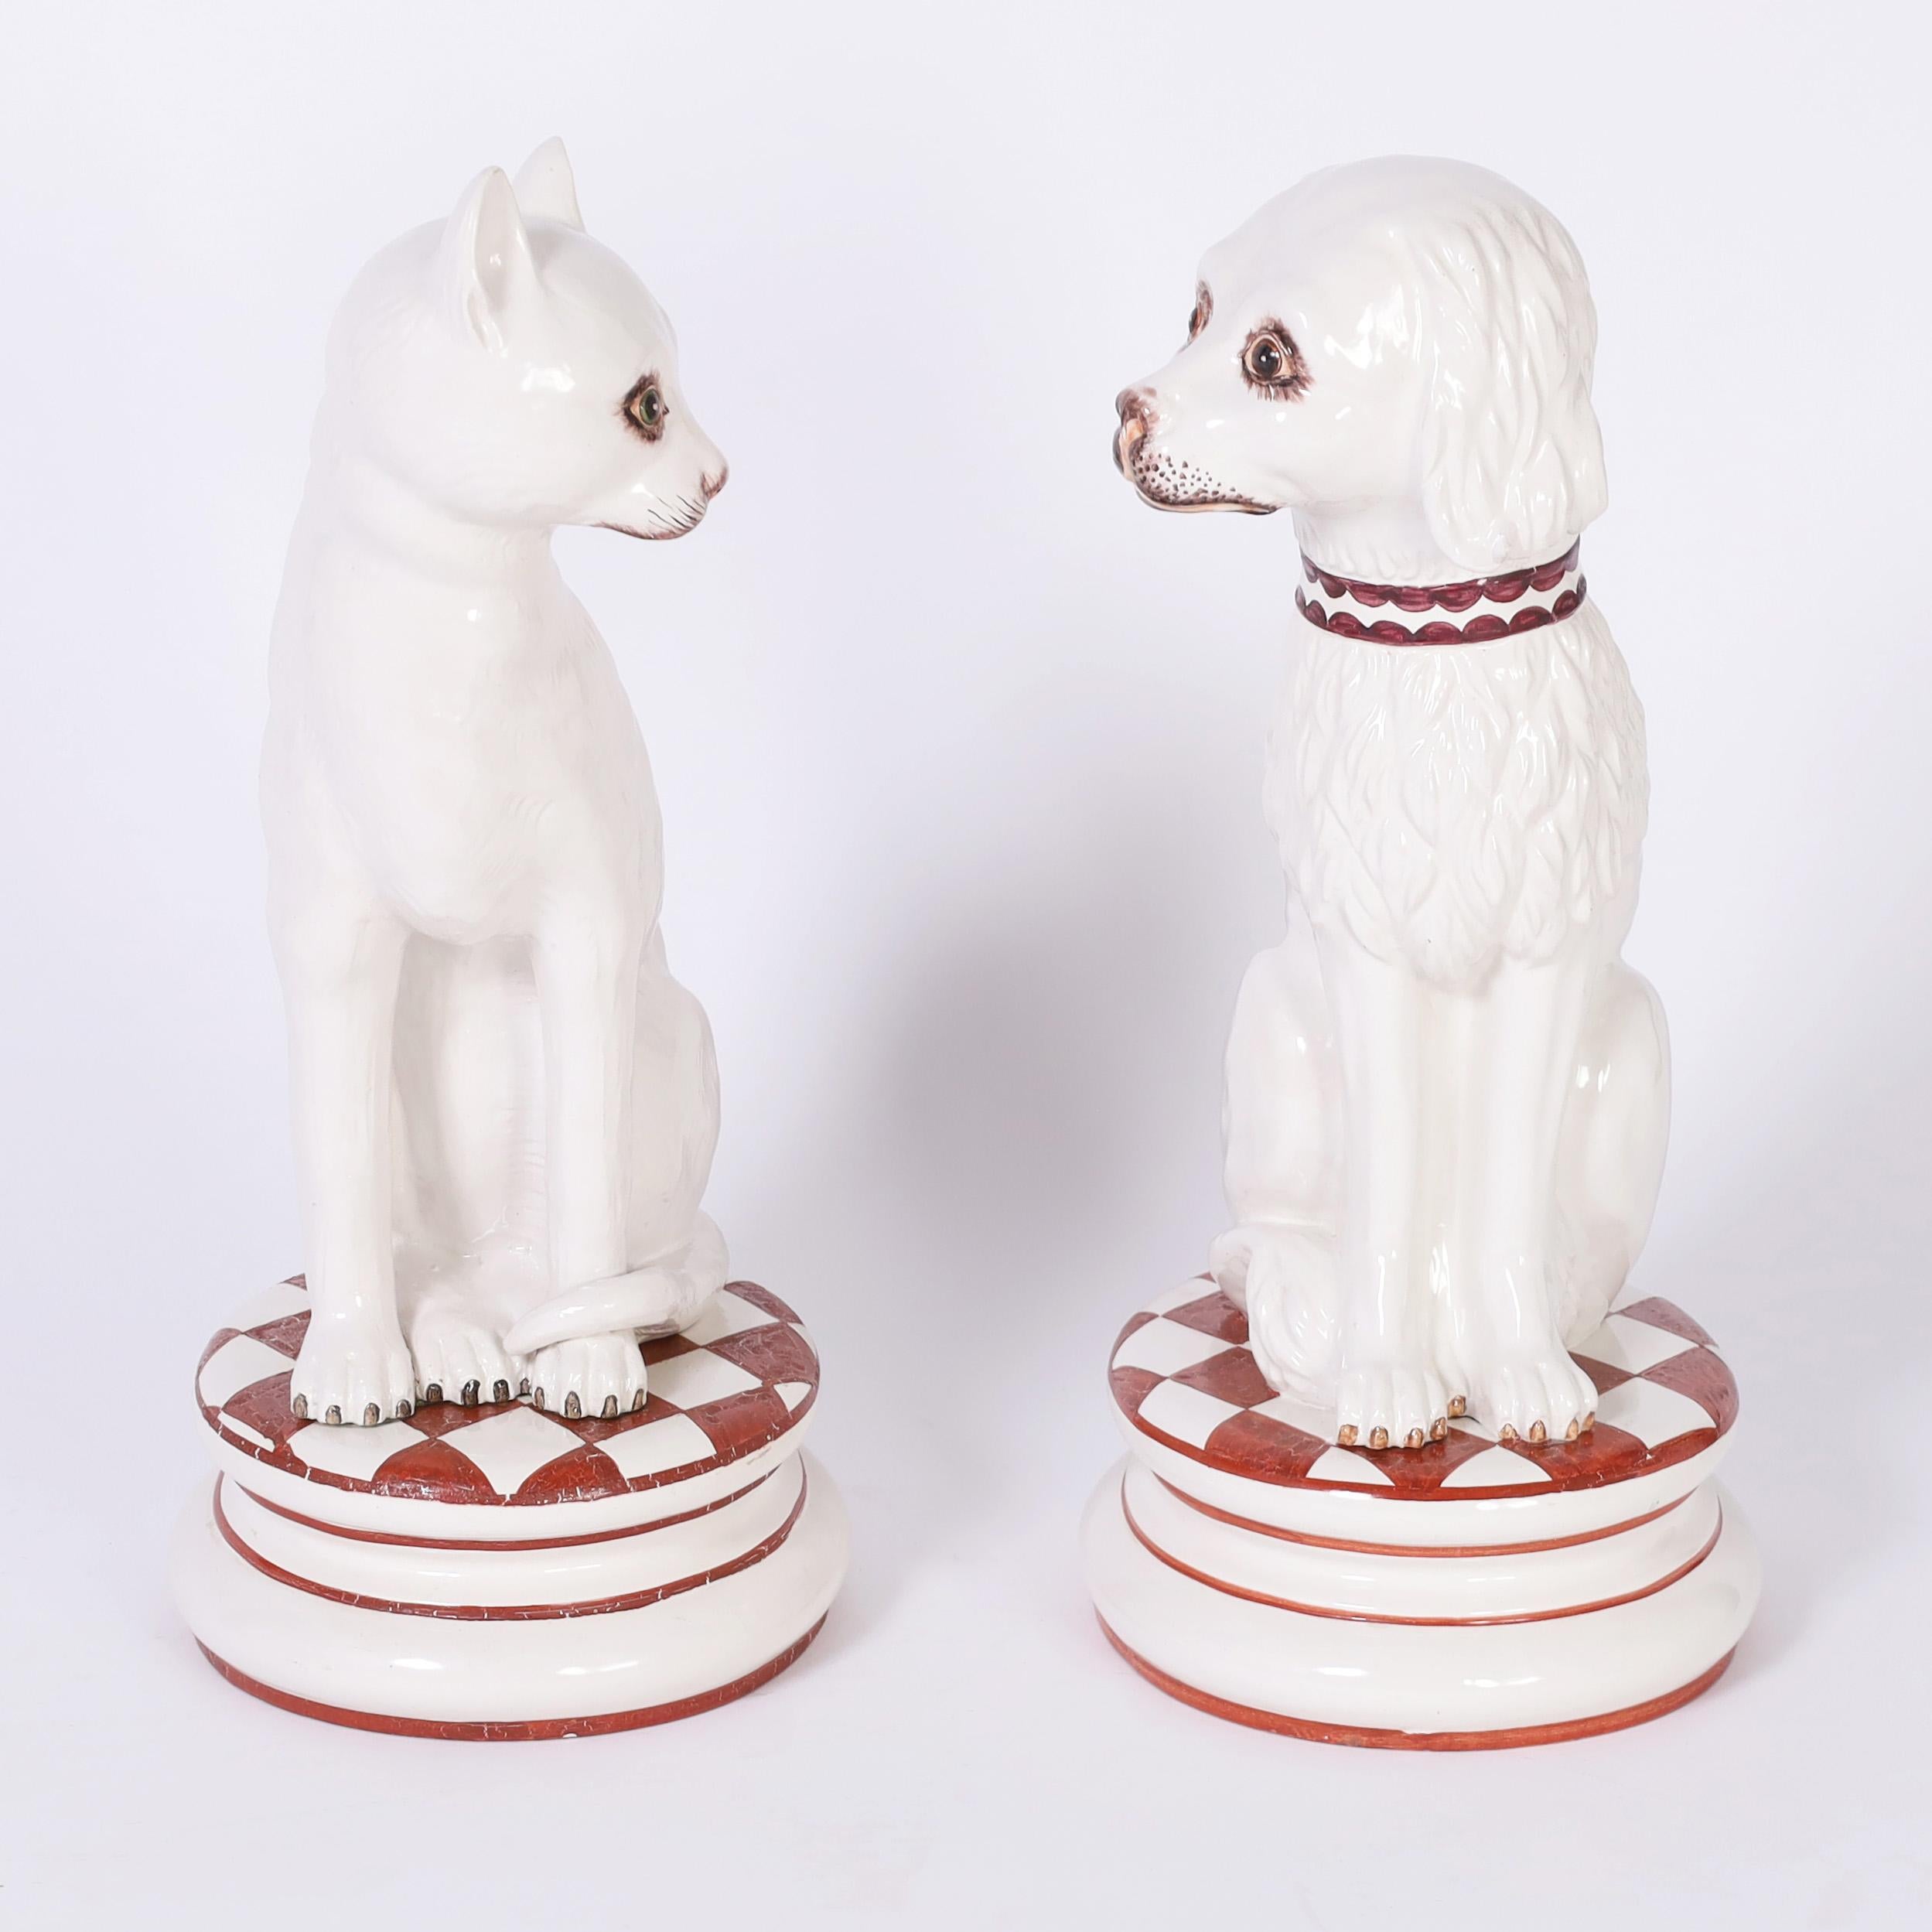 Beste Freunde zusammen, italienische Vintage-Figuren in Lebensgröße für Hund und Katze auf passenden Kissen, aus Keramik gefertigt, von Hand dekoriert und glasiert.